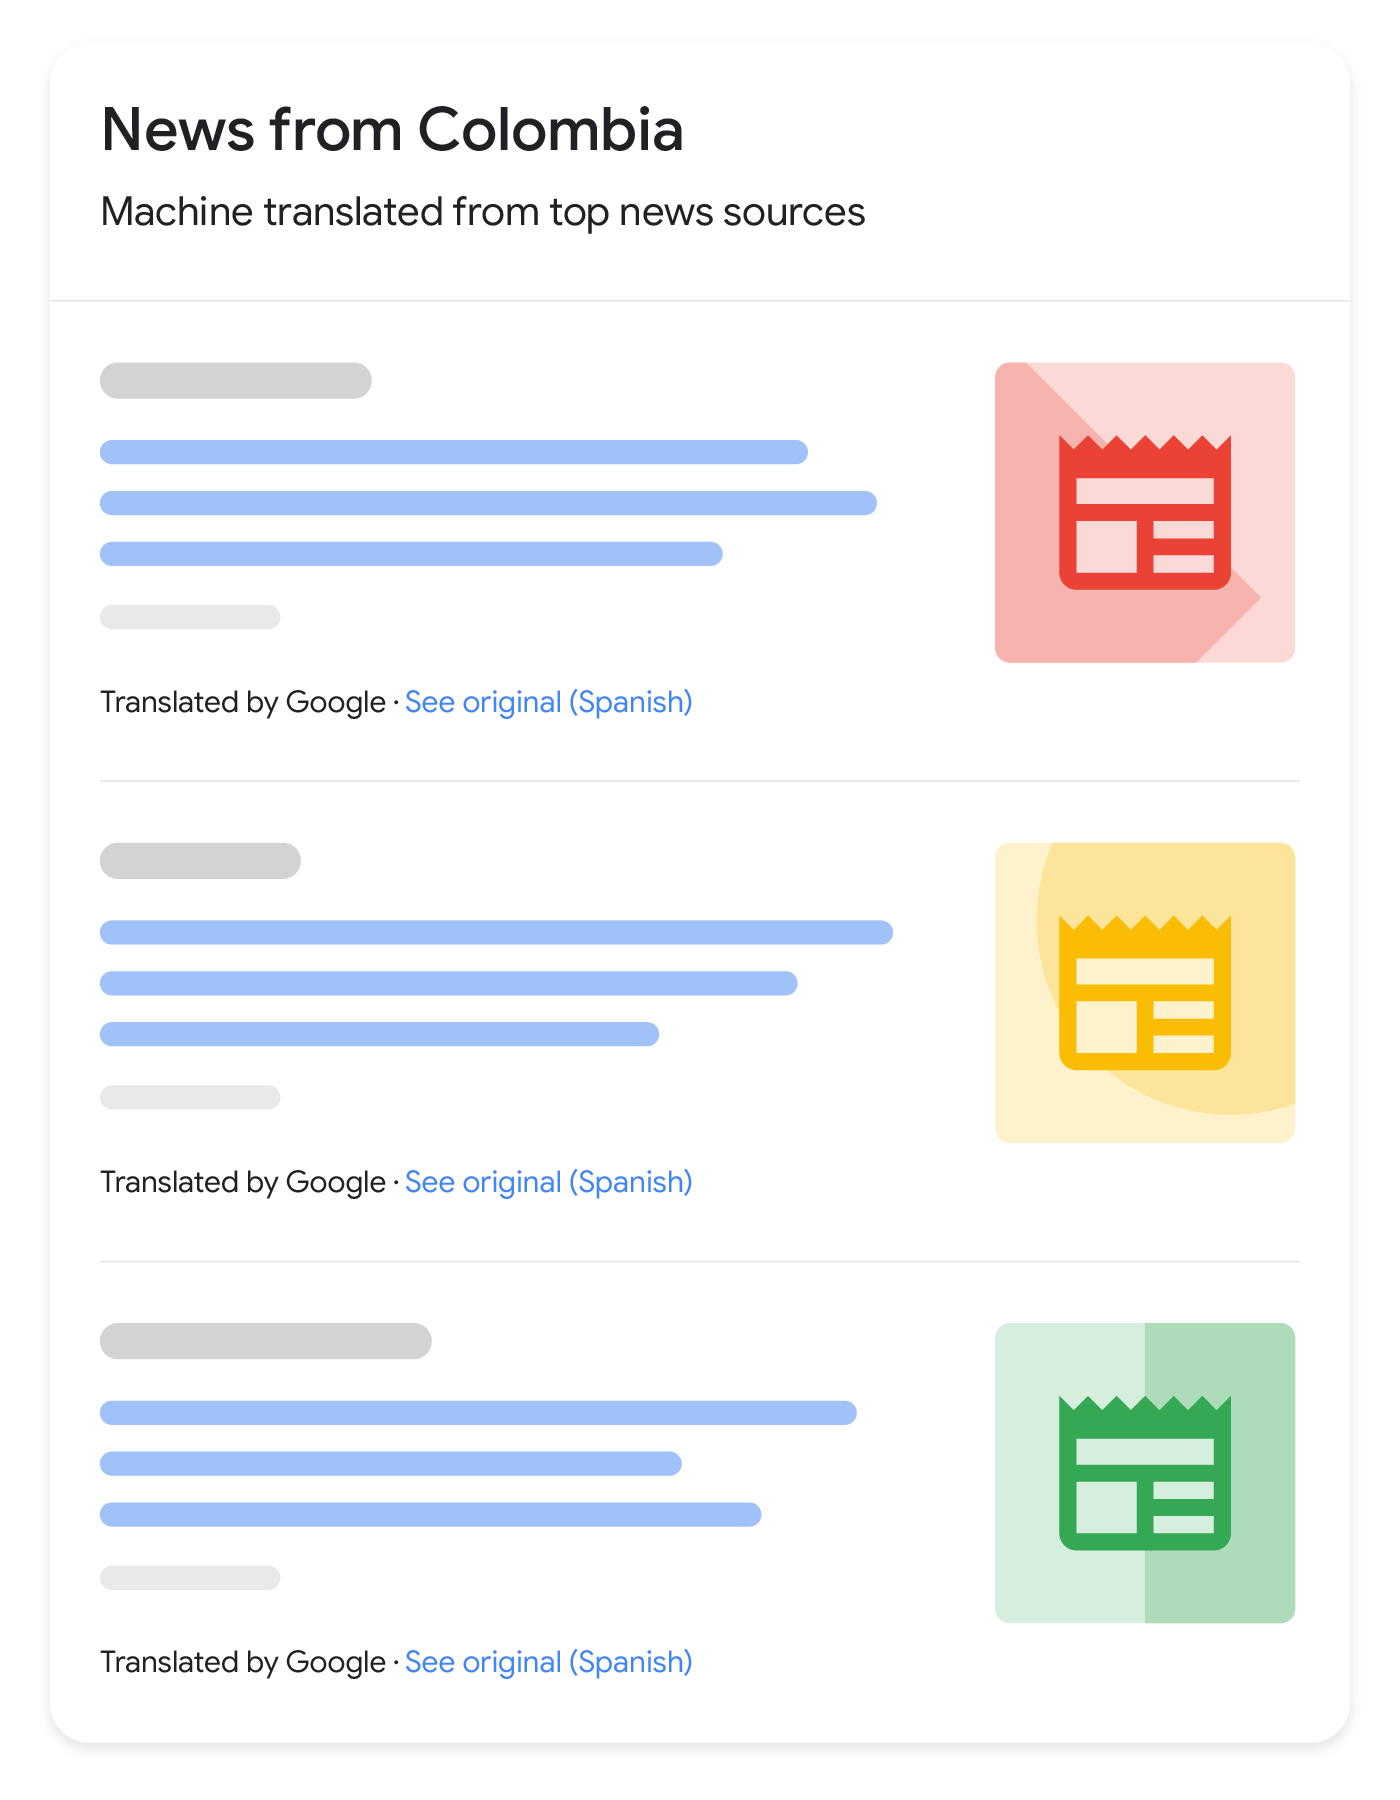 Jak mogą wyglądać przetłumaczone wyniki z wiadomości w wyszukiwarce Google